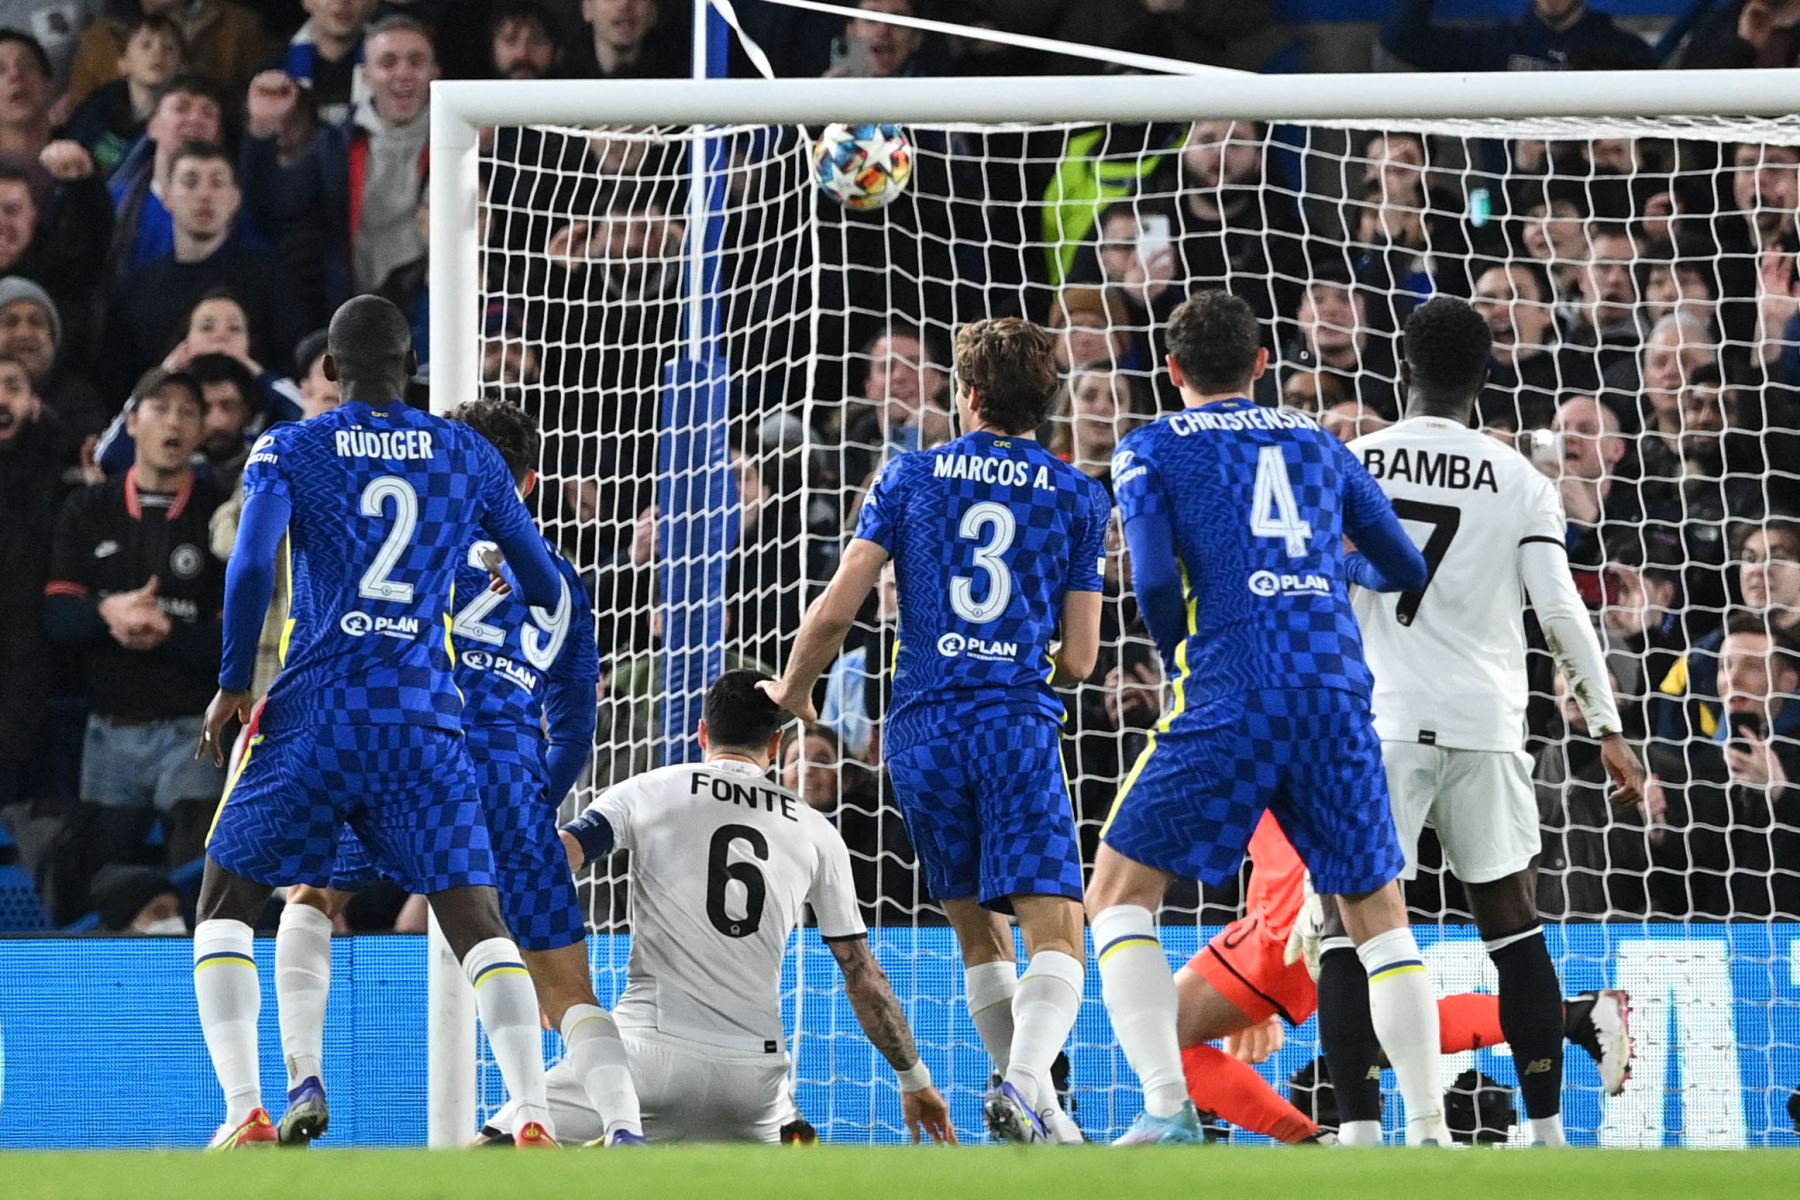 El centrocampista alemán del Chelsea, Kai Havertz, cabecea el balón y marca un gol durante el partido de ida de octavos de final de la Liga de Campeones de la UEFA entre Chelsea y Lille.
Foto: AFP